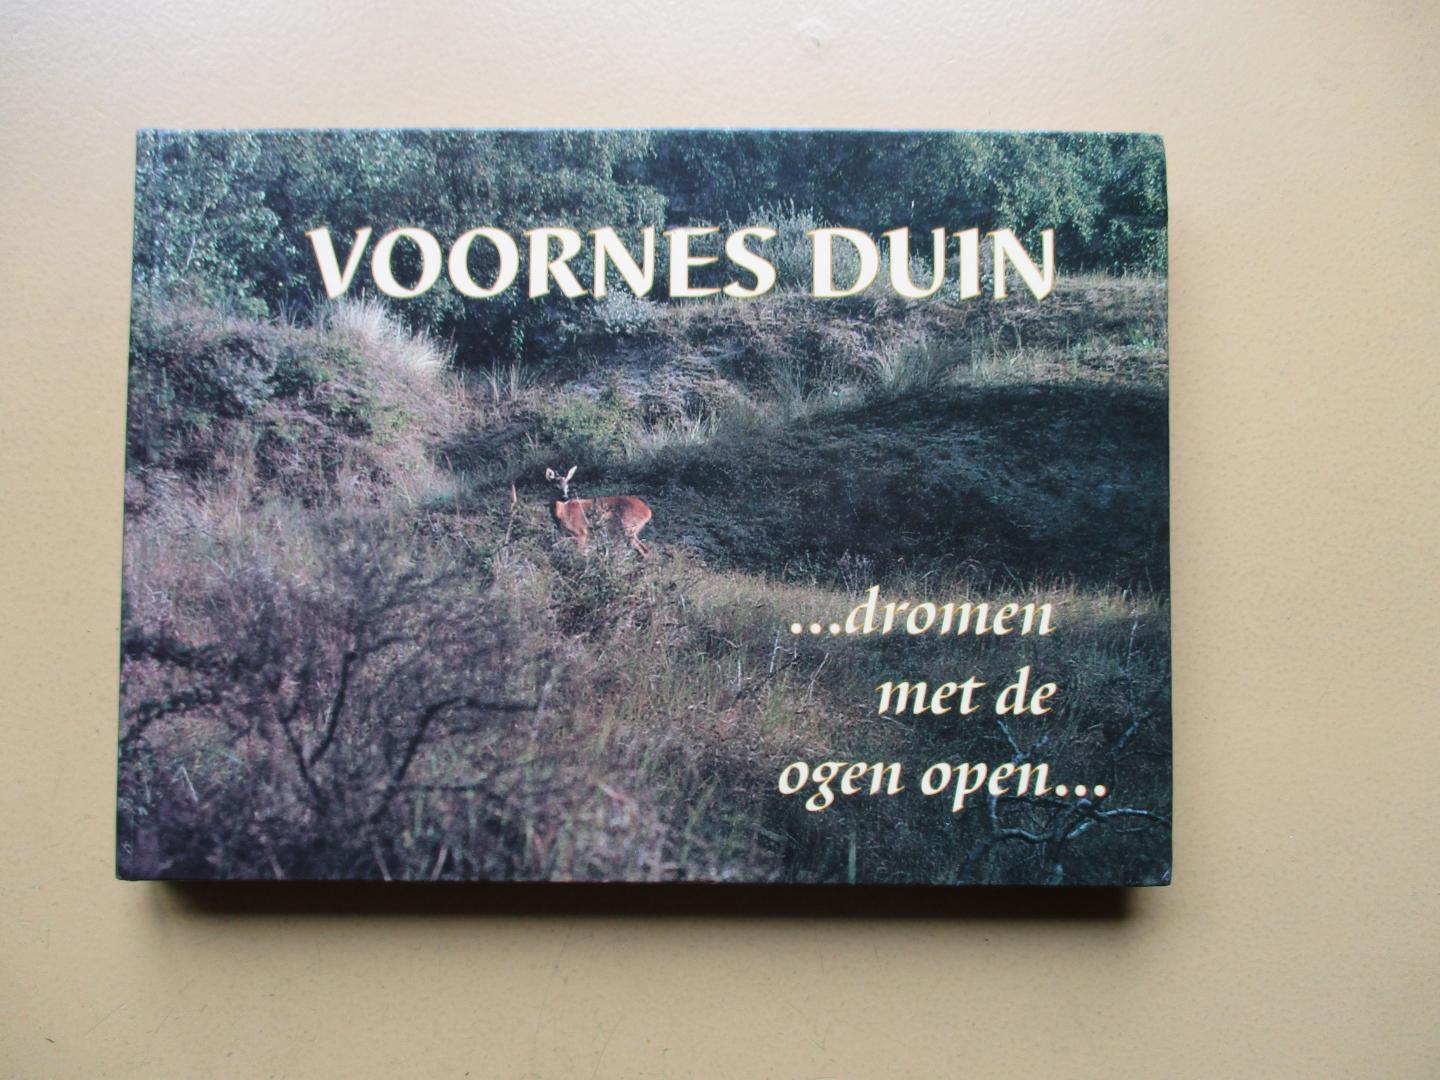 Lecq, J. van der - Voornes Duin  ...dromen met de ogen open...